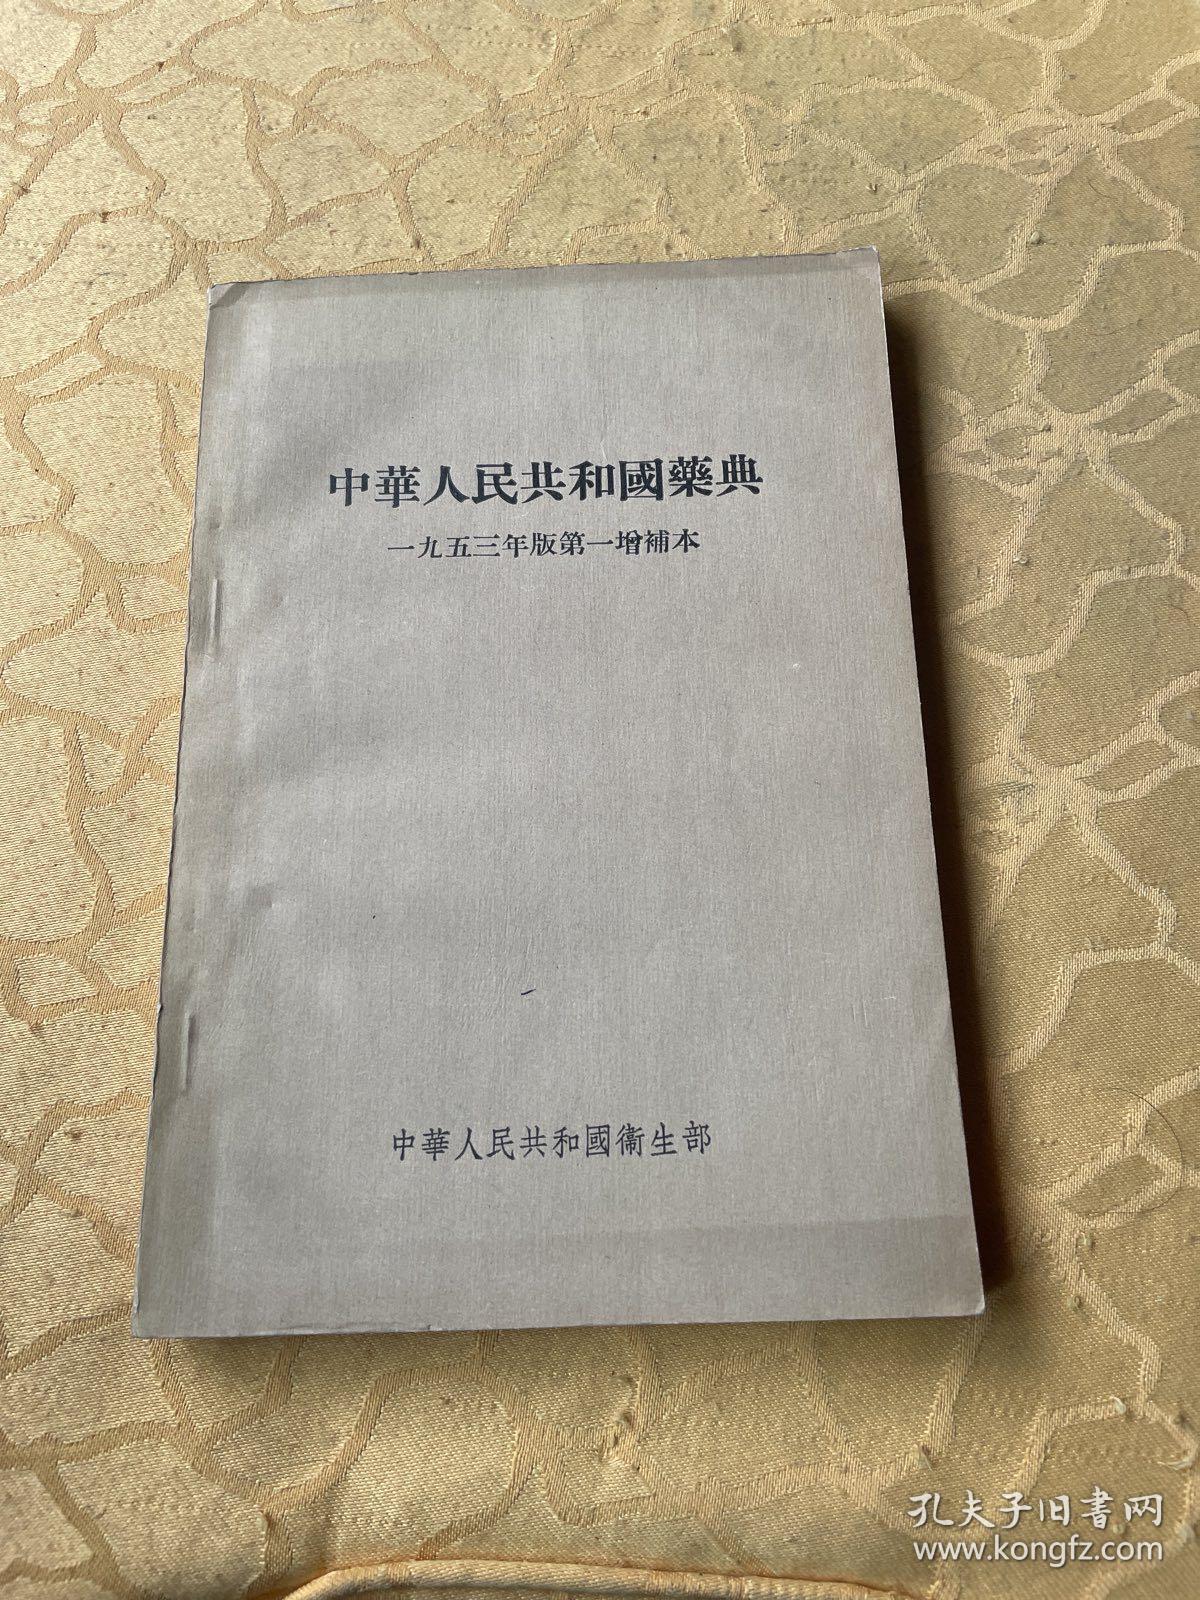 中华人民共和国药典1953